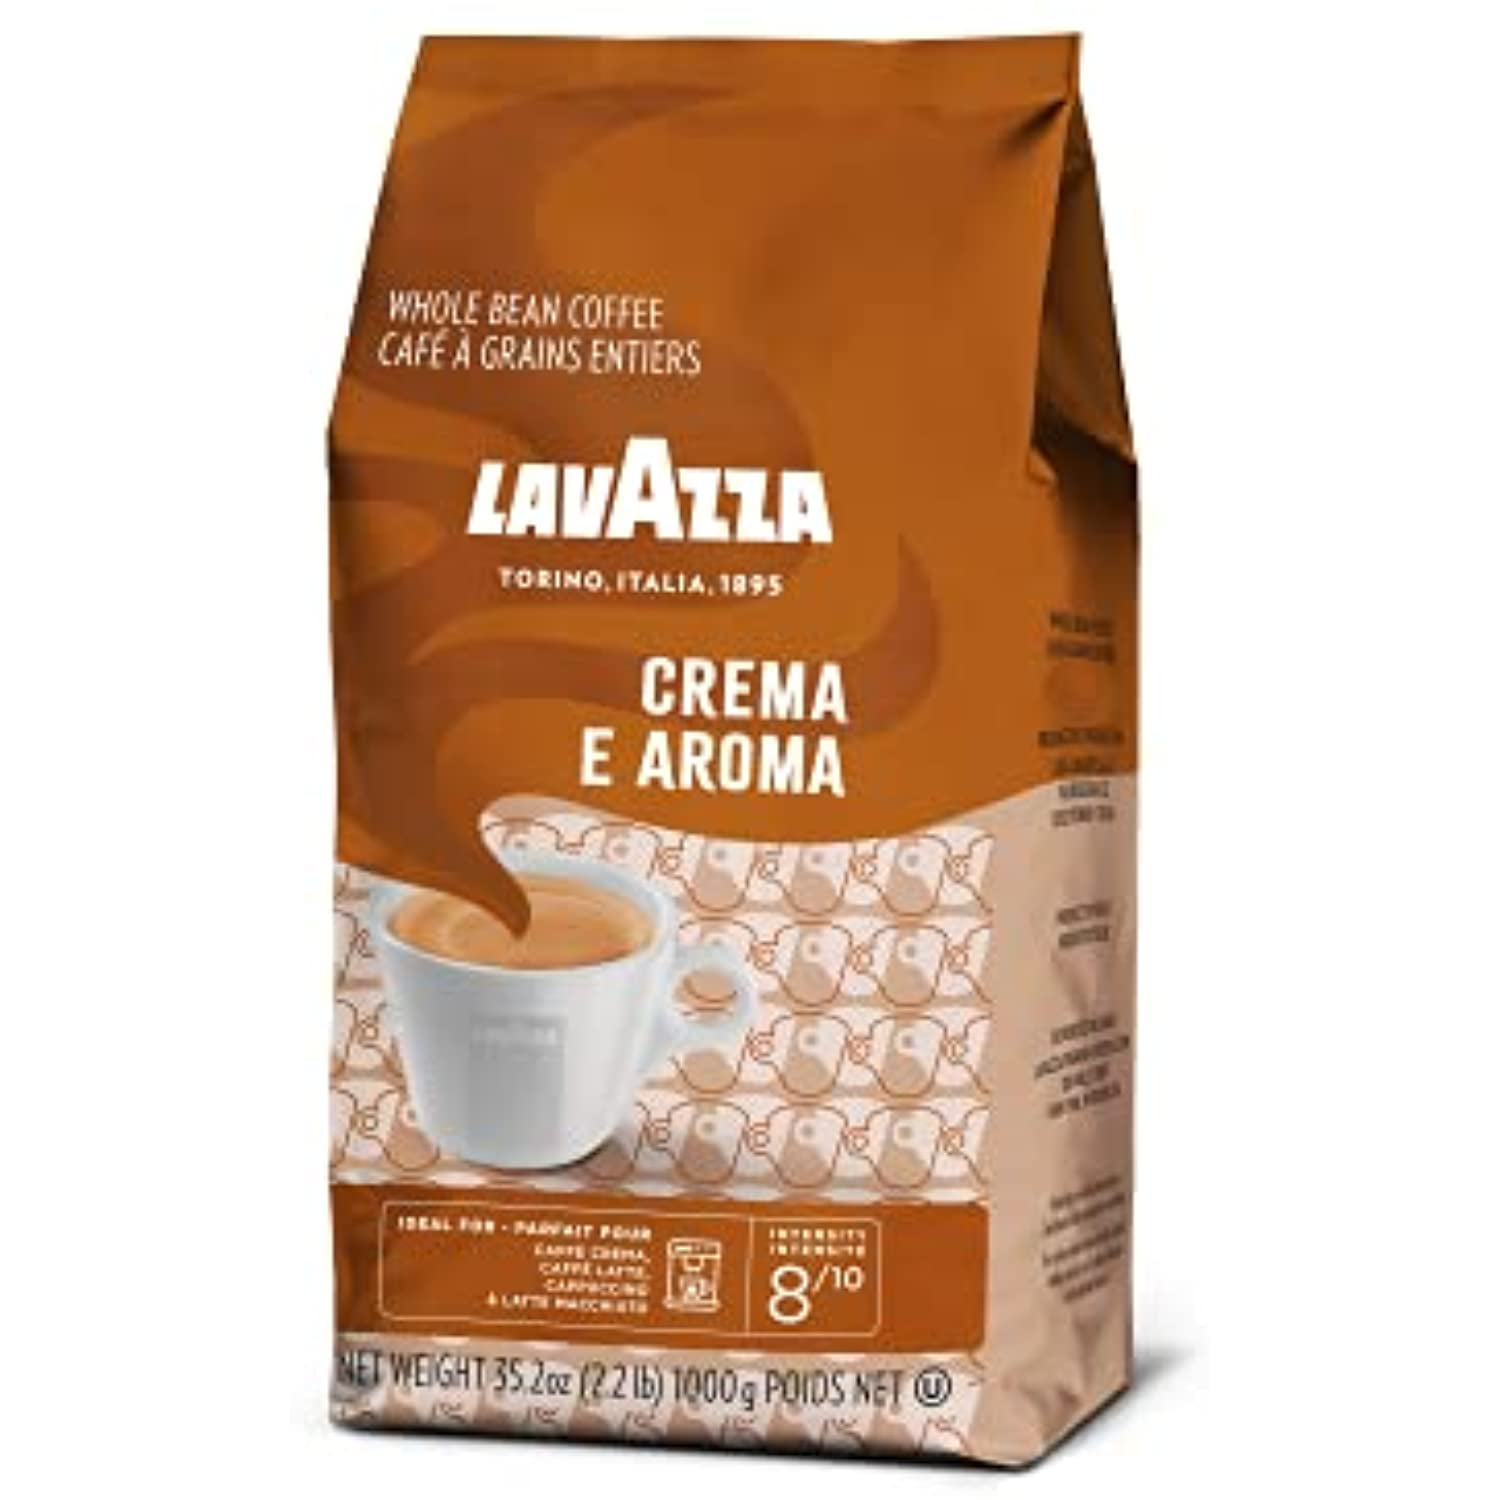 Lavazza crema e aroma café grains 1 kg